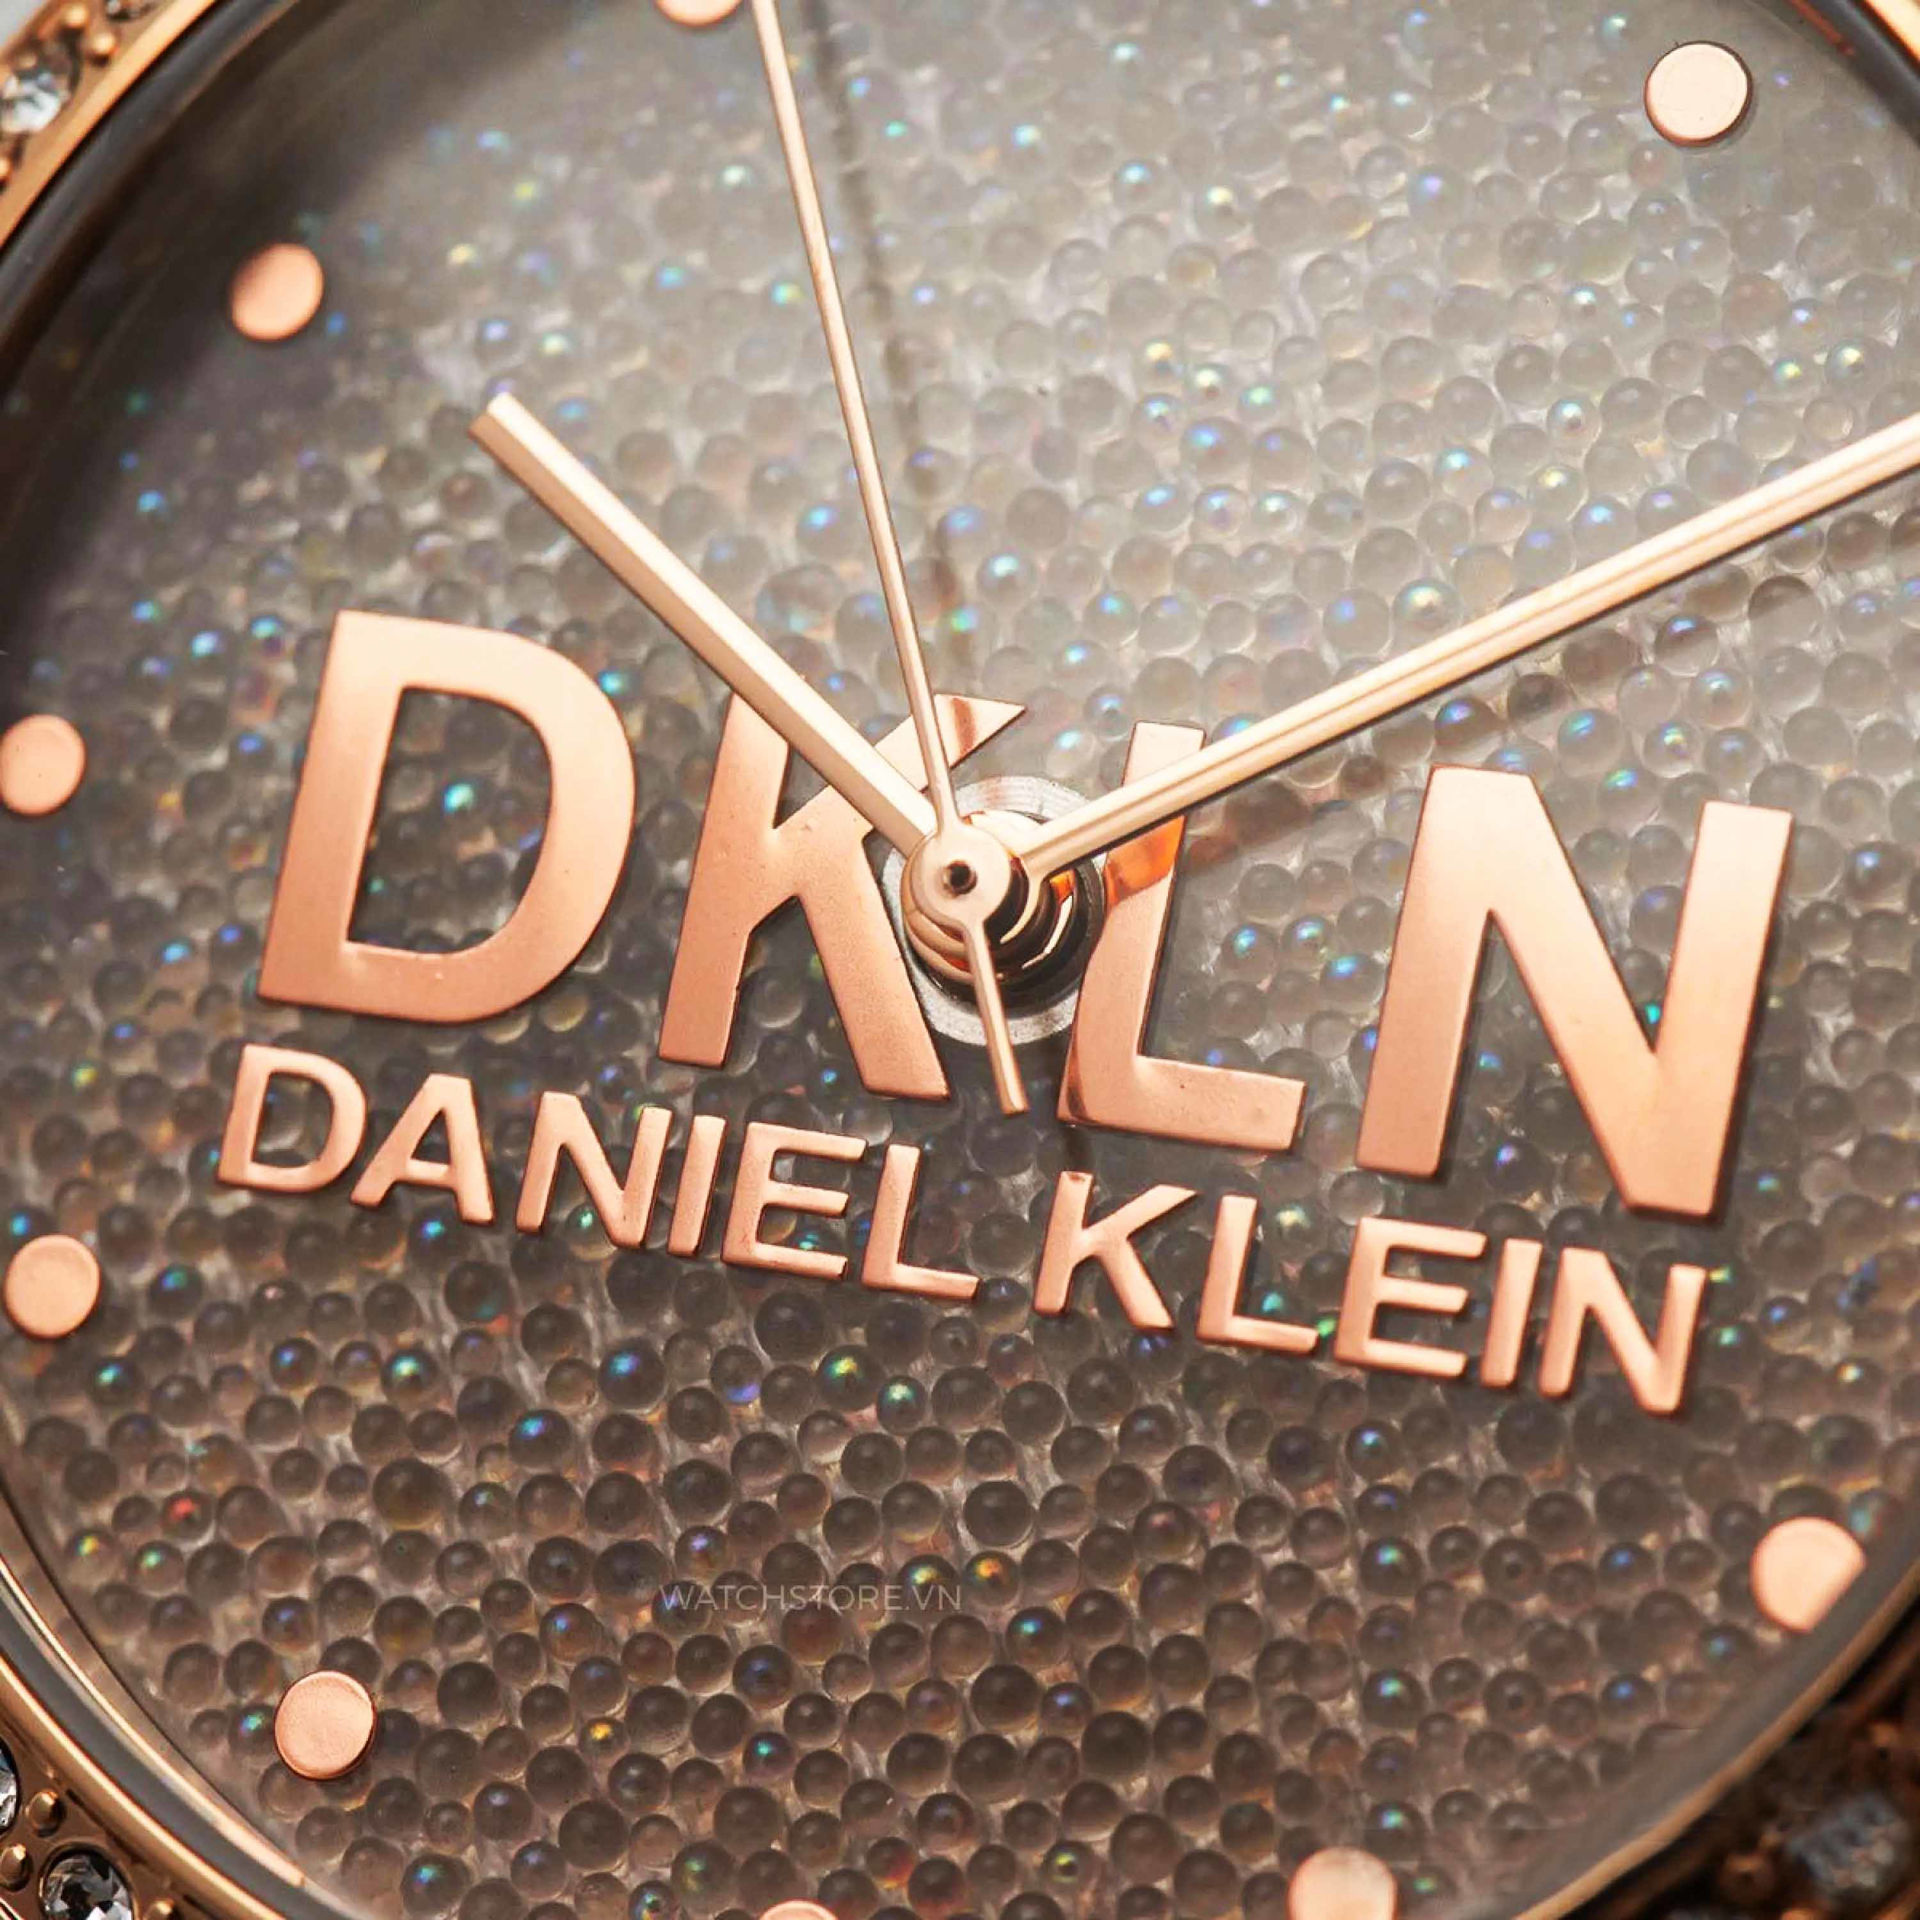 ساعت مچی زنانه دنیل کلین daniel klein اورجینال مدل DK.1.12562.4